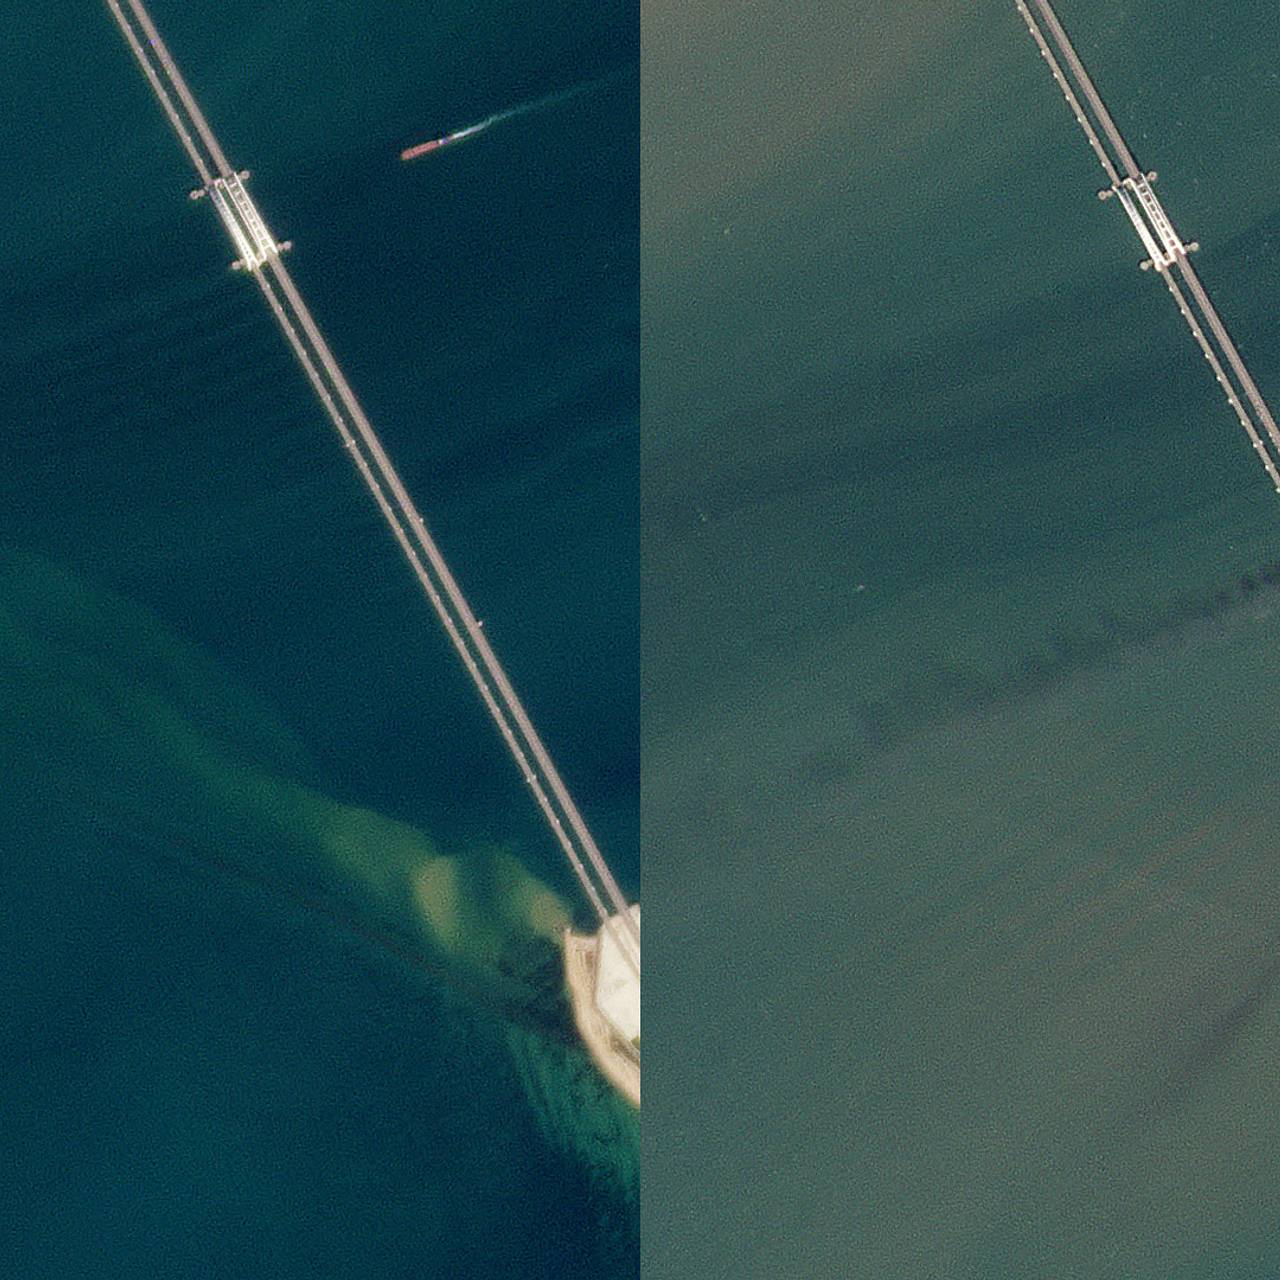 Опубликованы снимки Крымского моста из космоса до и после взрыва